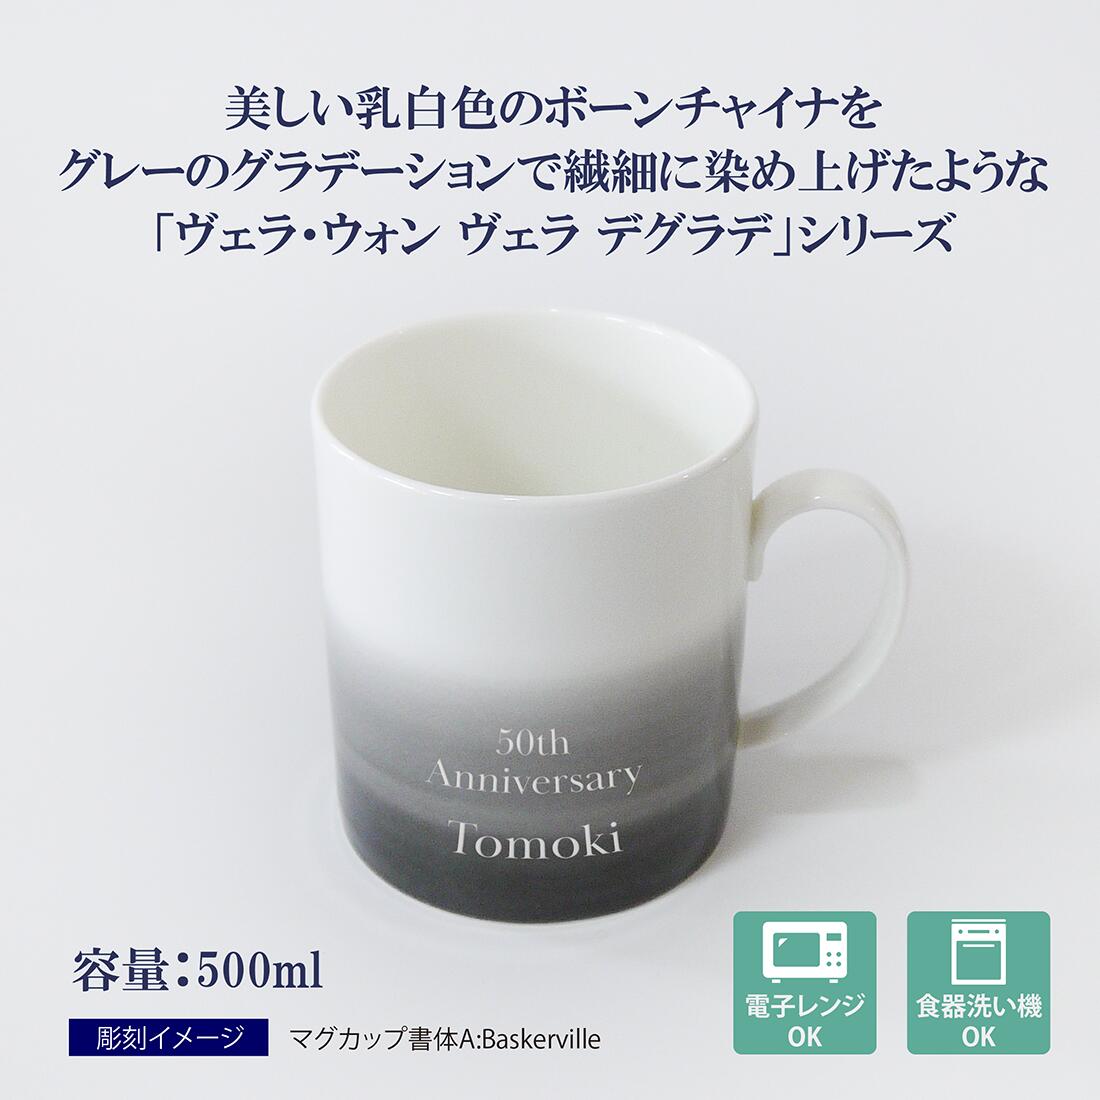 ウェッジウッド マグカップ ヴェラウォン www.poke.co.jp